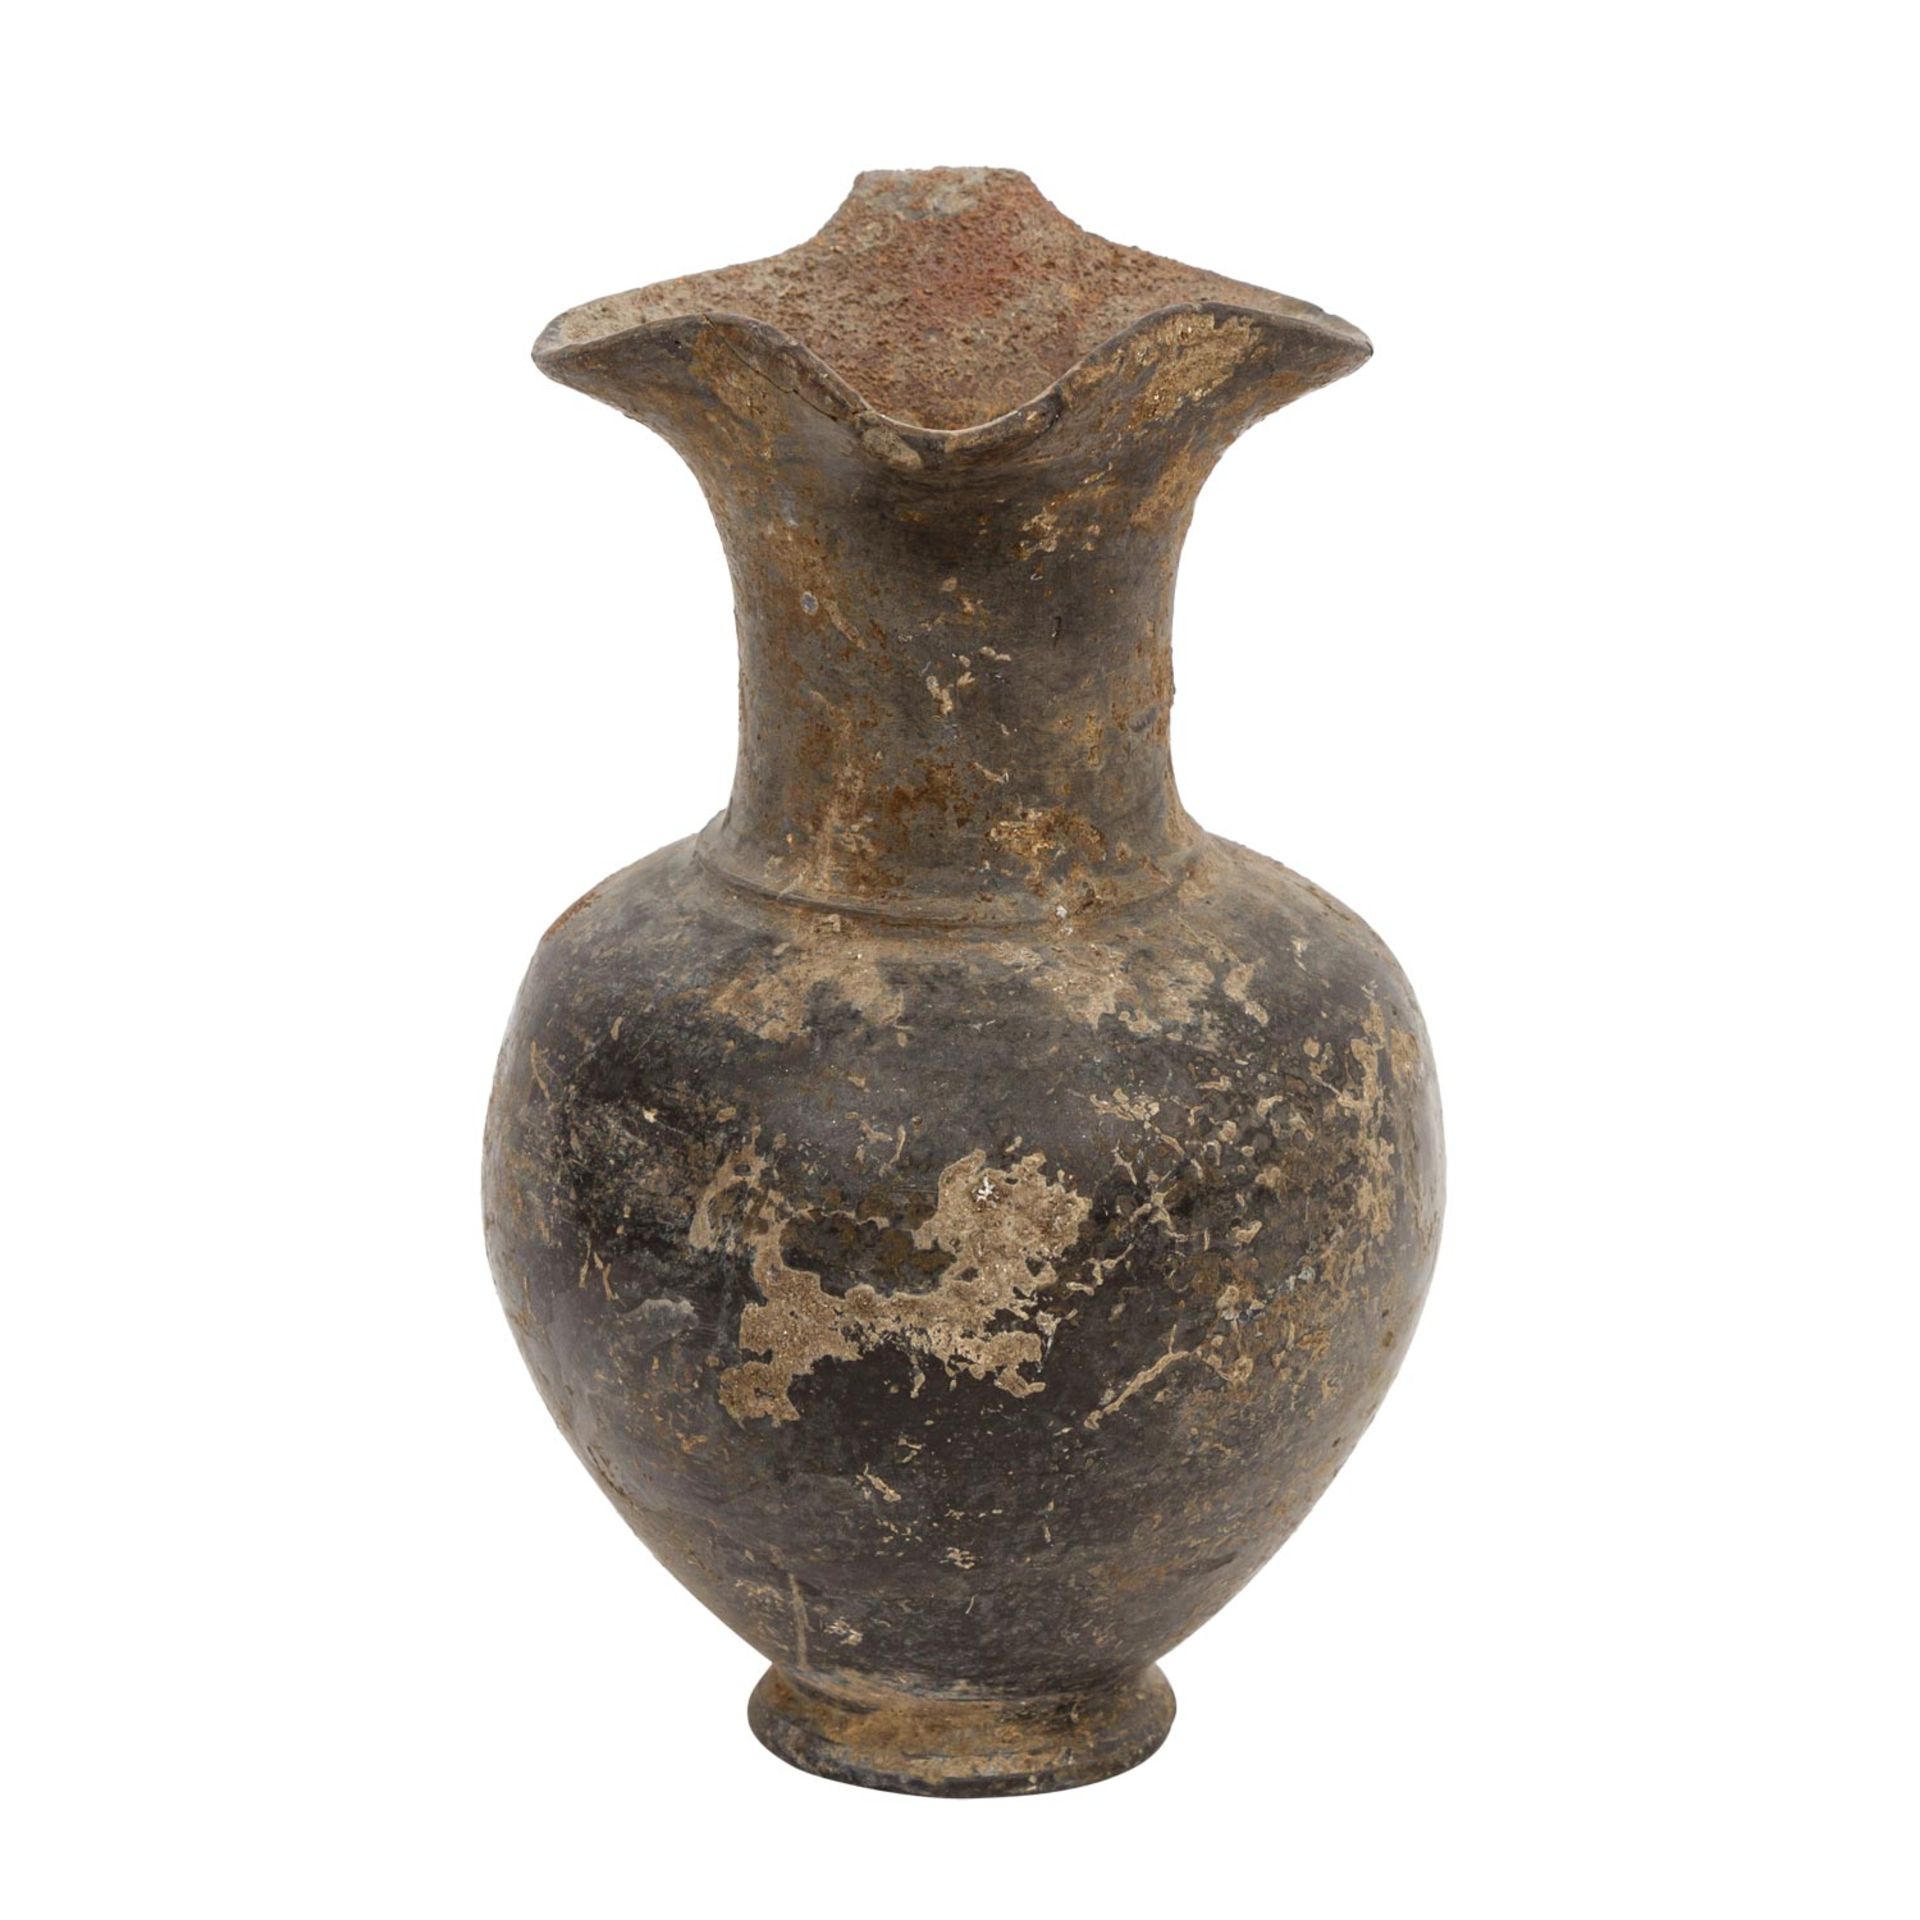 Antike Keramik aus Etrurien - einhenklige Kanne aus Buccherokeramik mit kleeblattförm - Image 4 of 6